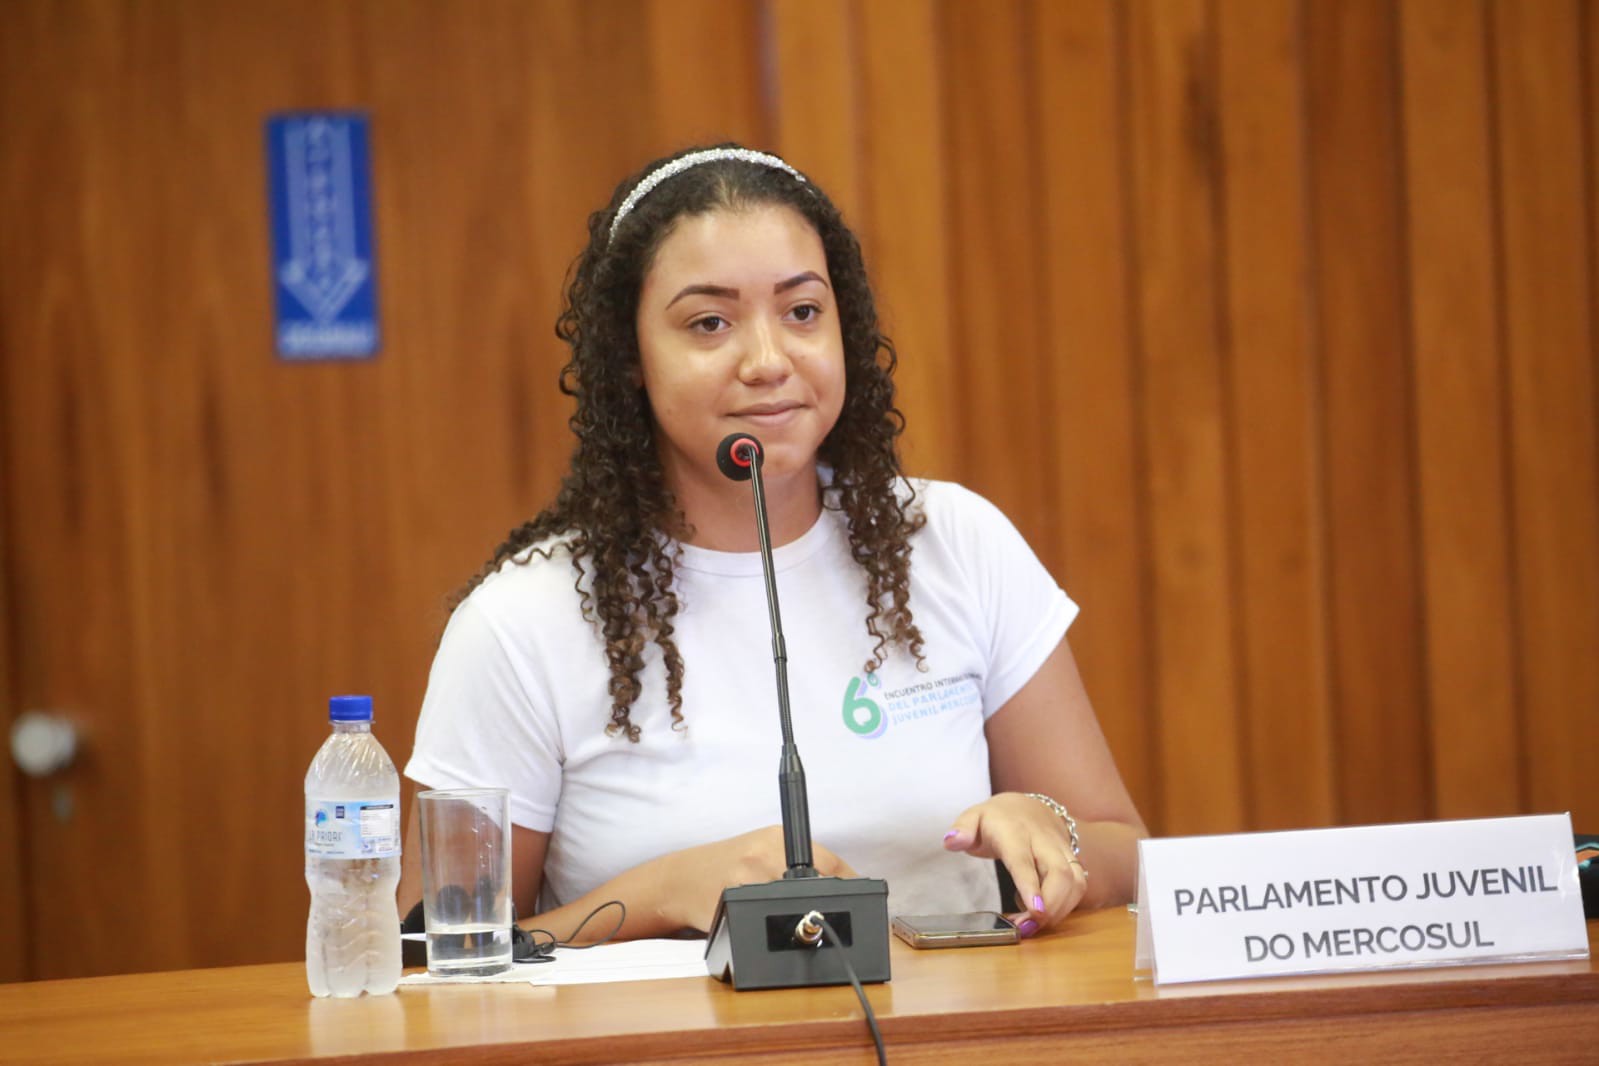 Alice Vitória Lino Pires, estudante do IFG Câmpus Uruaçu, representou o Parlamento Juvenil do Mercosul em reunião com ministros de países do bloco